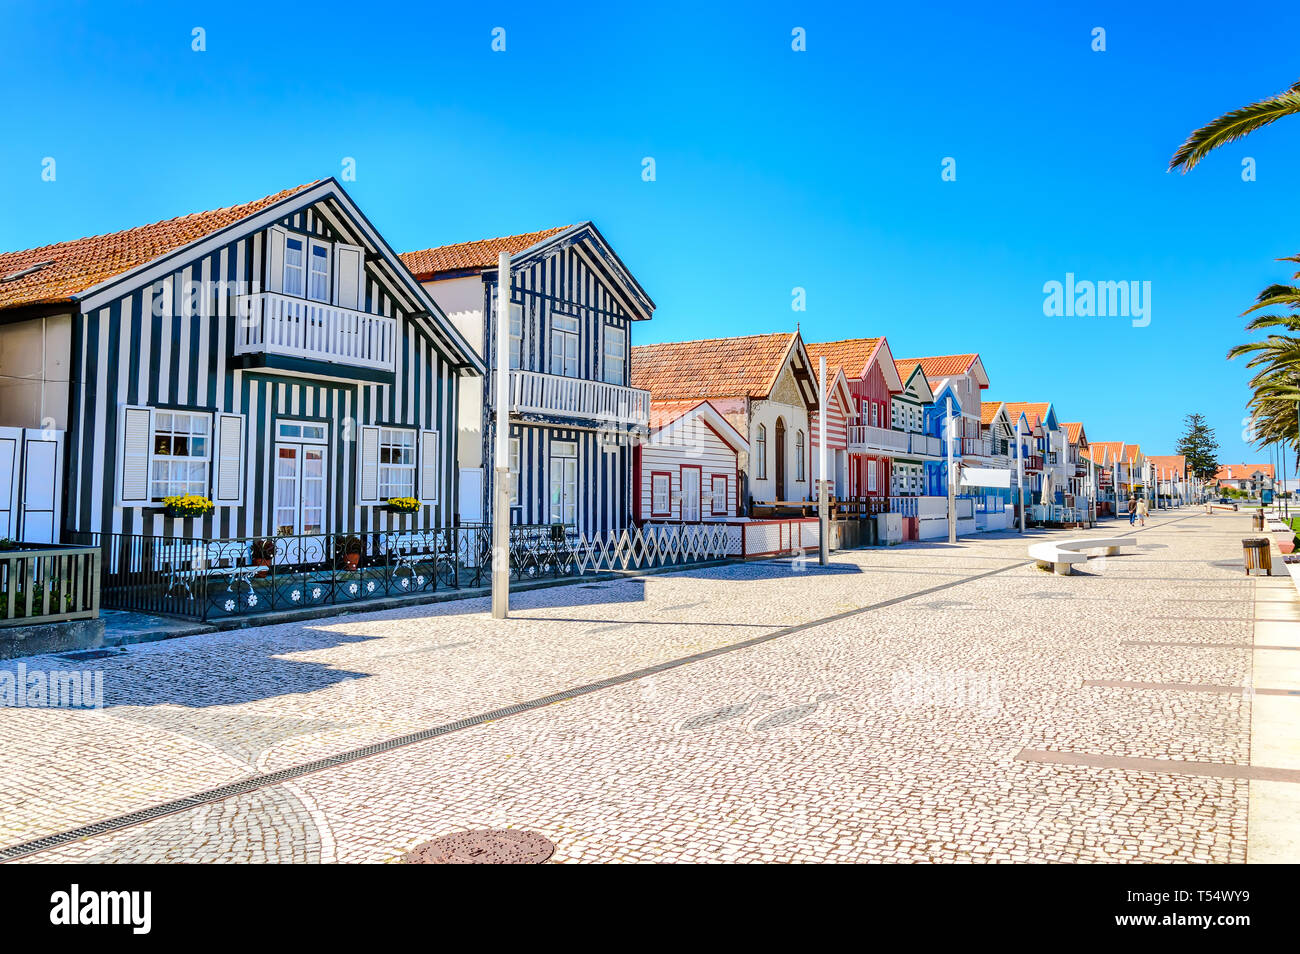 Costa Nova, Portugal : maisons appelées Palheiros à rayures colorées de rouge, de bleu et de bandes vertes. Costa Nova do Prado est un village beach resort sur l'Atla Banque D'Images